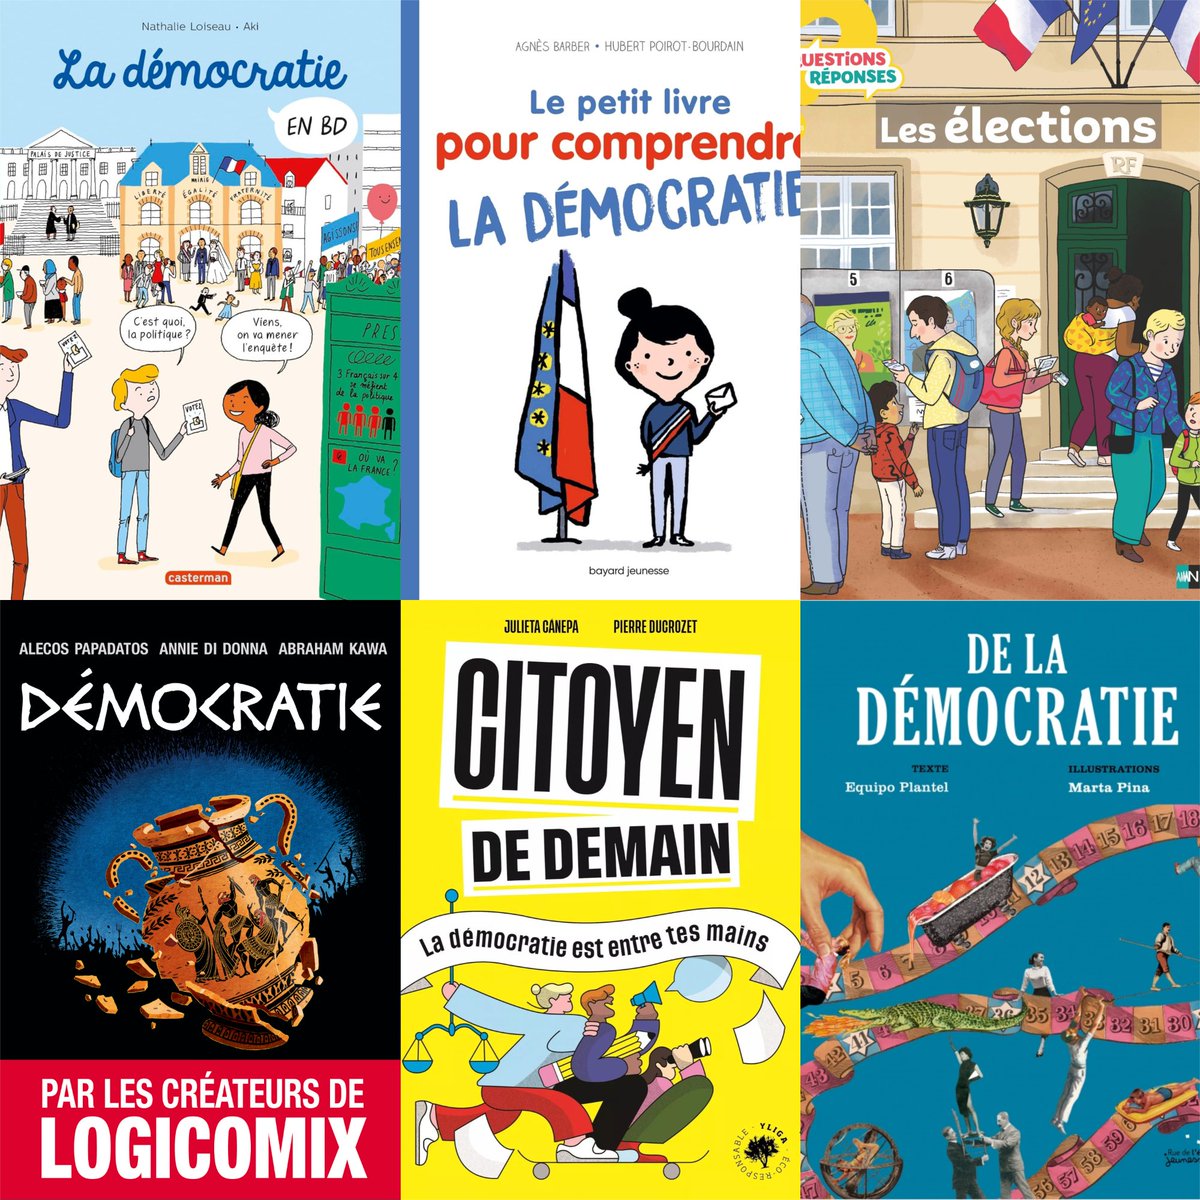 Découvrez notre sélection des meilleurs livres jeunesse pour expliquer la démocratie et les élections aux enfants !🤔🚸📚🌍✍

Lire l'article👉urlz.fr/qada

#culturadvisor #culture #livres #lecture #lire #enfants #familles #éducation #apprentissage #démocratie